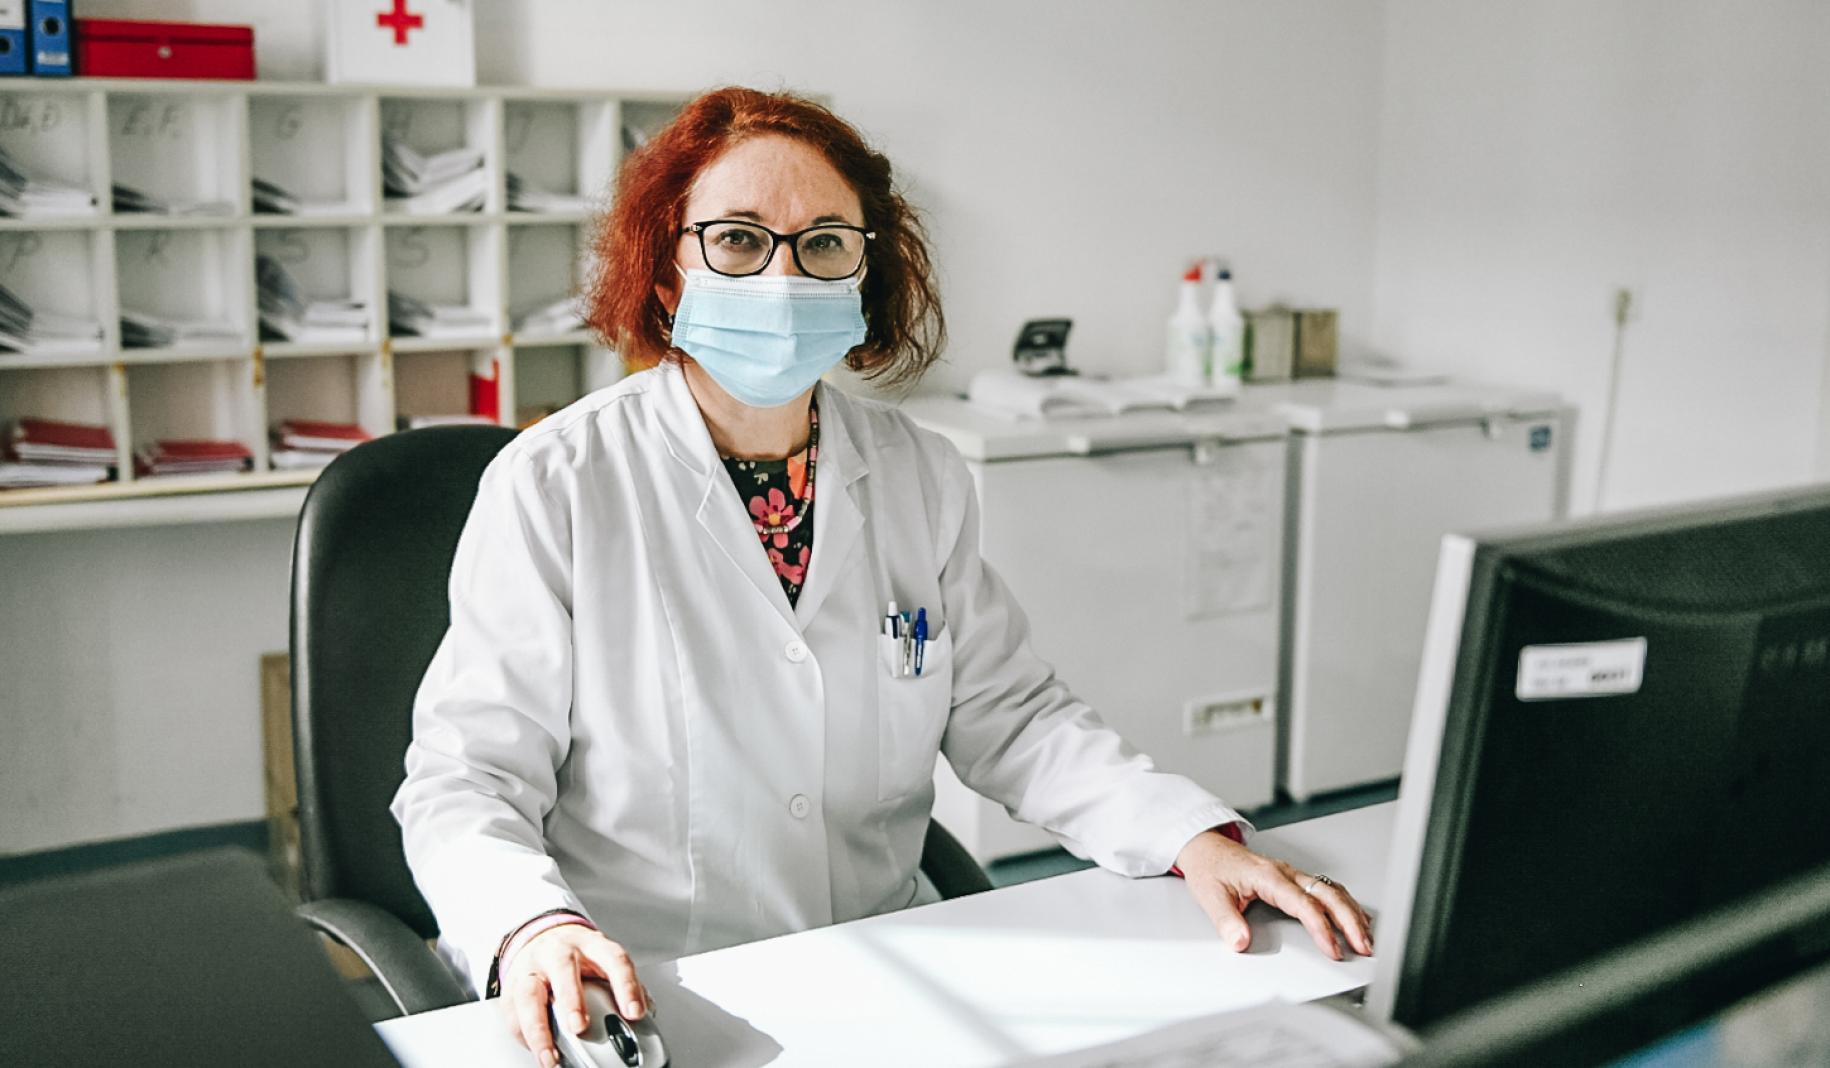 Snežana Bursać Aranđelović est assise à son bureau, un ordinateur devant elle, à l'Institut de santé publique du canton de Sarajevo. Elle porte une blouse blanche et un masque chirurgical bleu et elle regarde la caméra. On aperçoit derrière des dossiers et objets divers posés sur des étagères blanches.